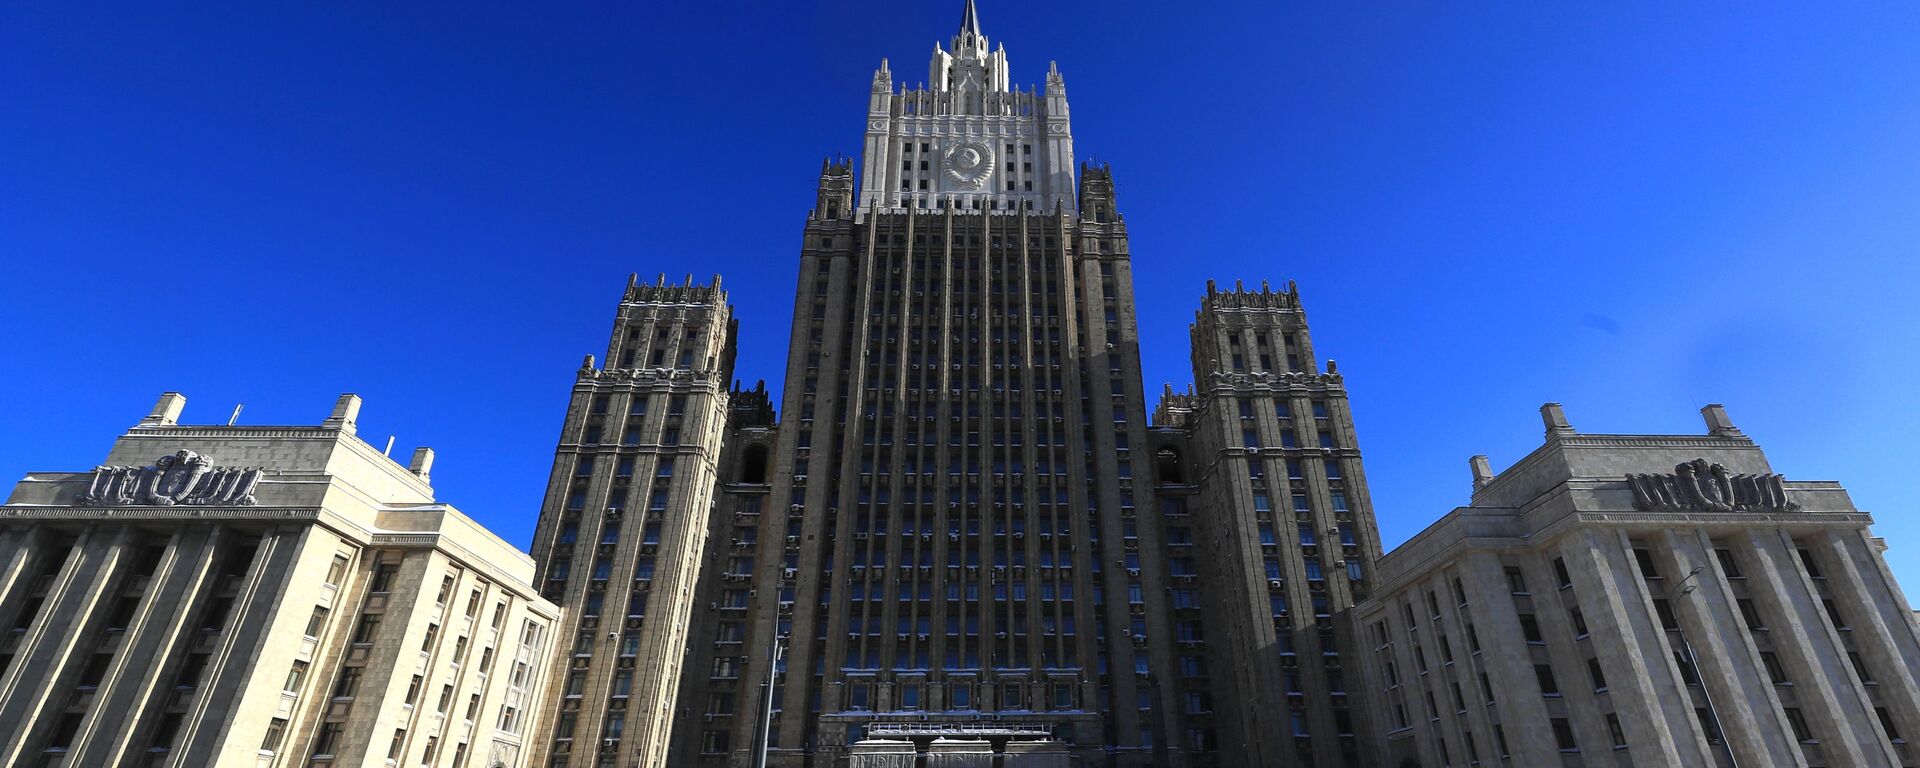 Здание Министерства иностранных дел РФ в Москве, архивное фото - Sputnik Lietuva, 1920, 26.04.2021